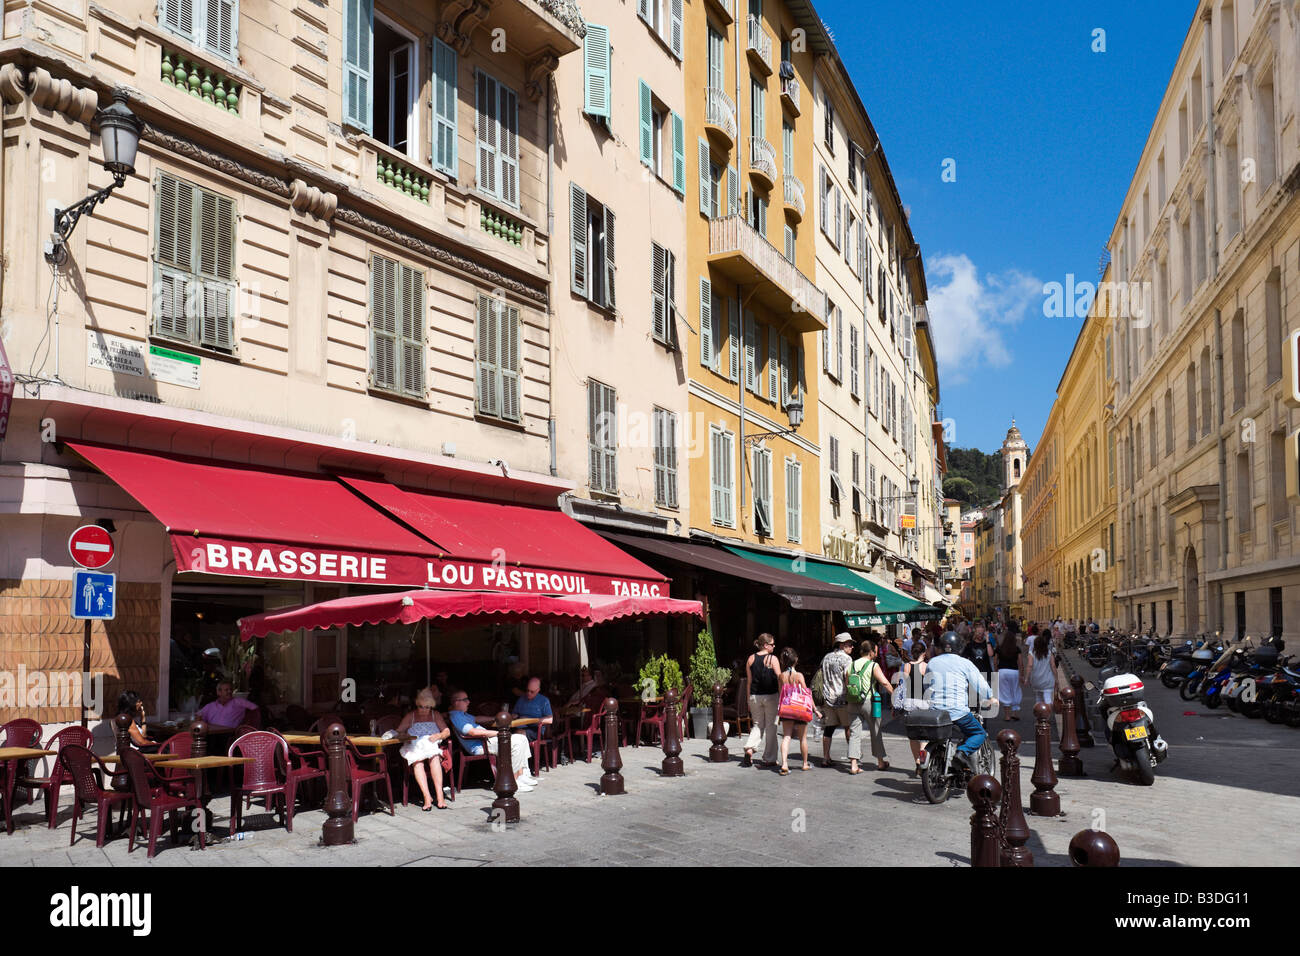 La Brasserie e negozi nella città vecchia (Vieux Nice), Rue de la prefettura, Nizza Cote d'Azur, Costa Azzurra, Francia Foto Stock